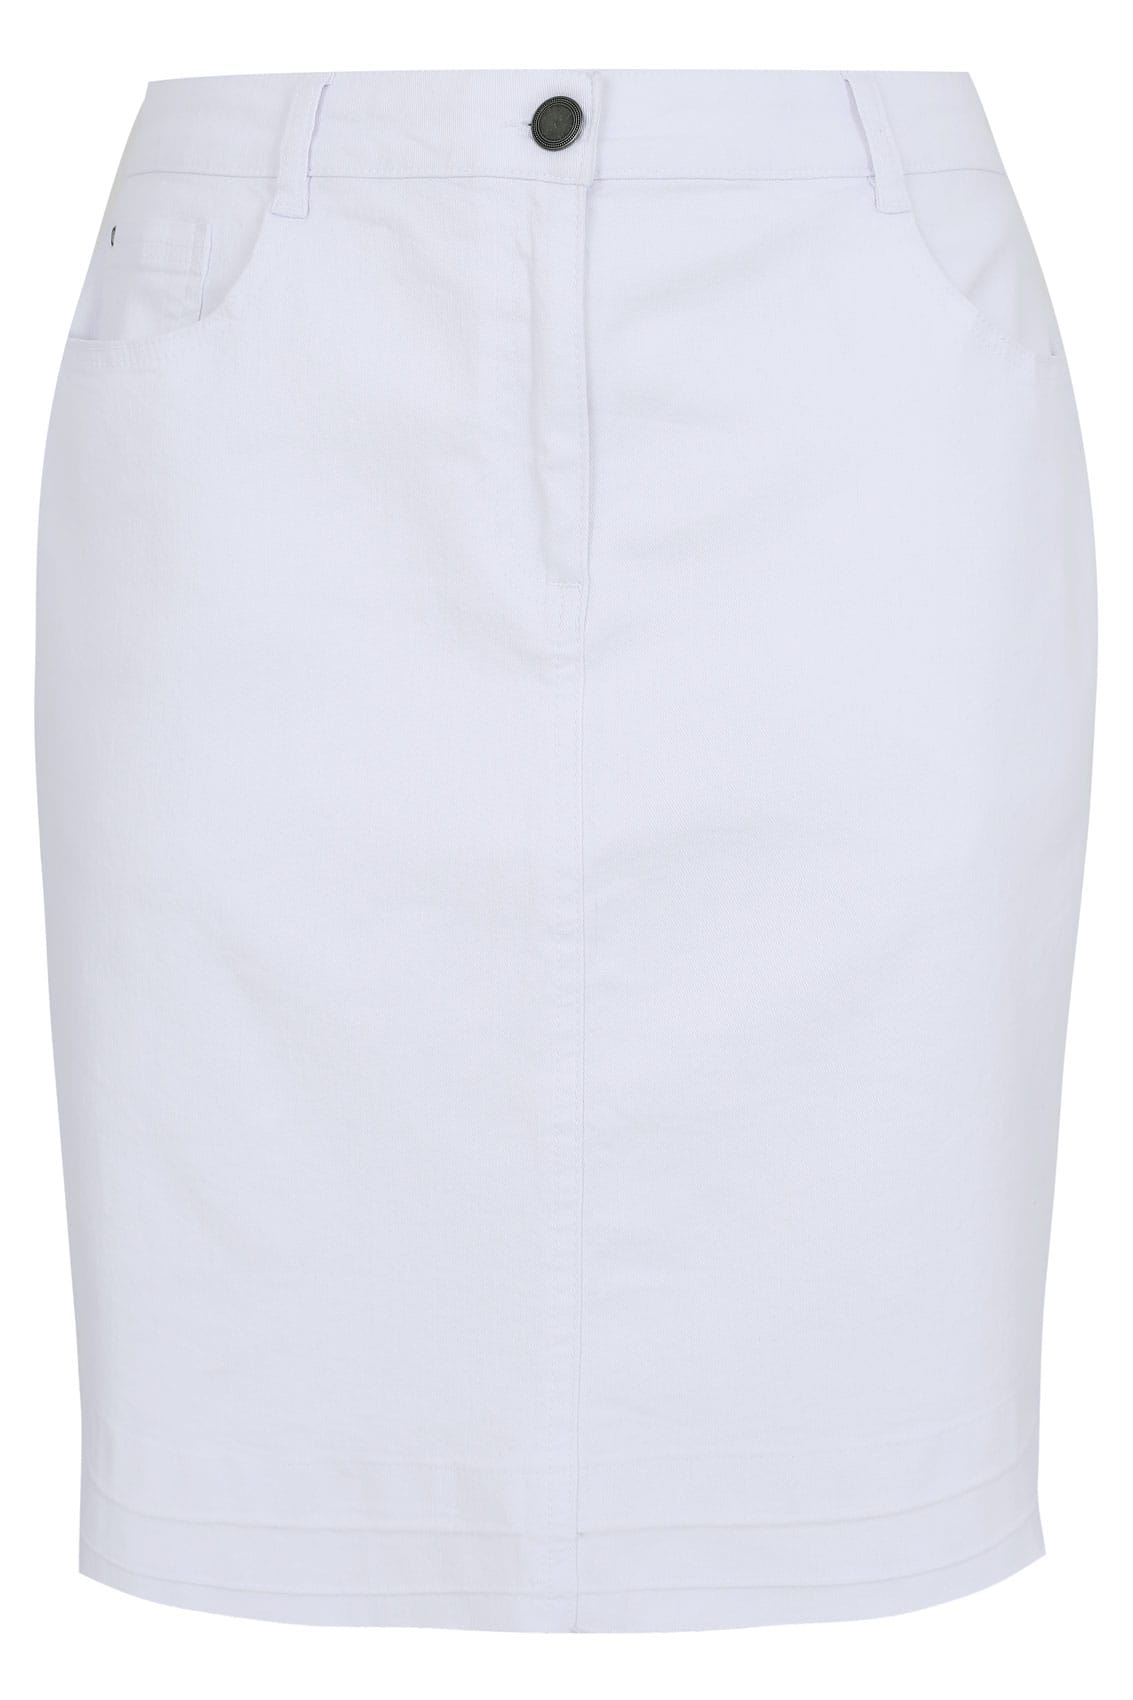 White 5 Pocket Denim Skirt With Raw Hem plus size 16 to 30